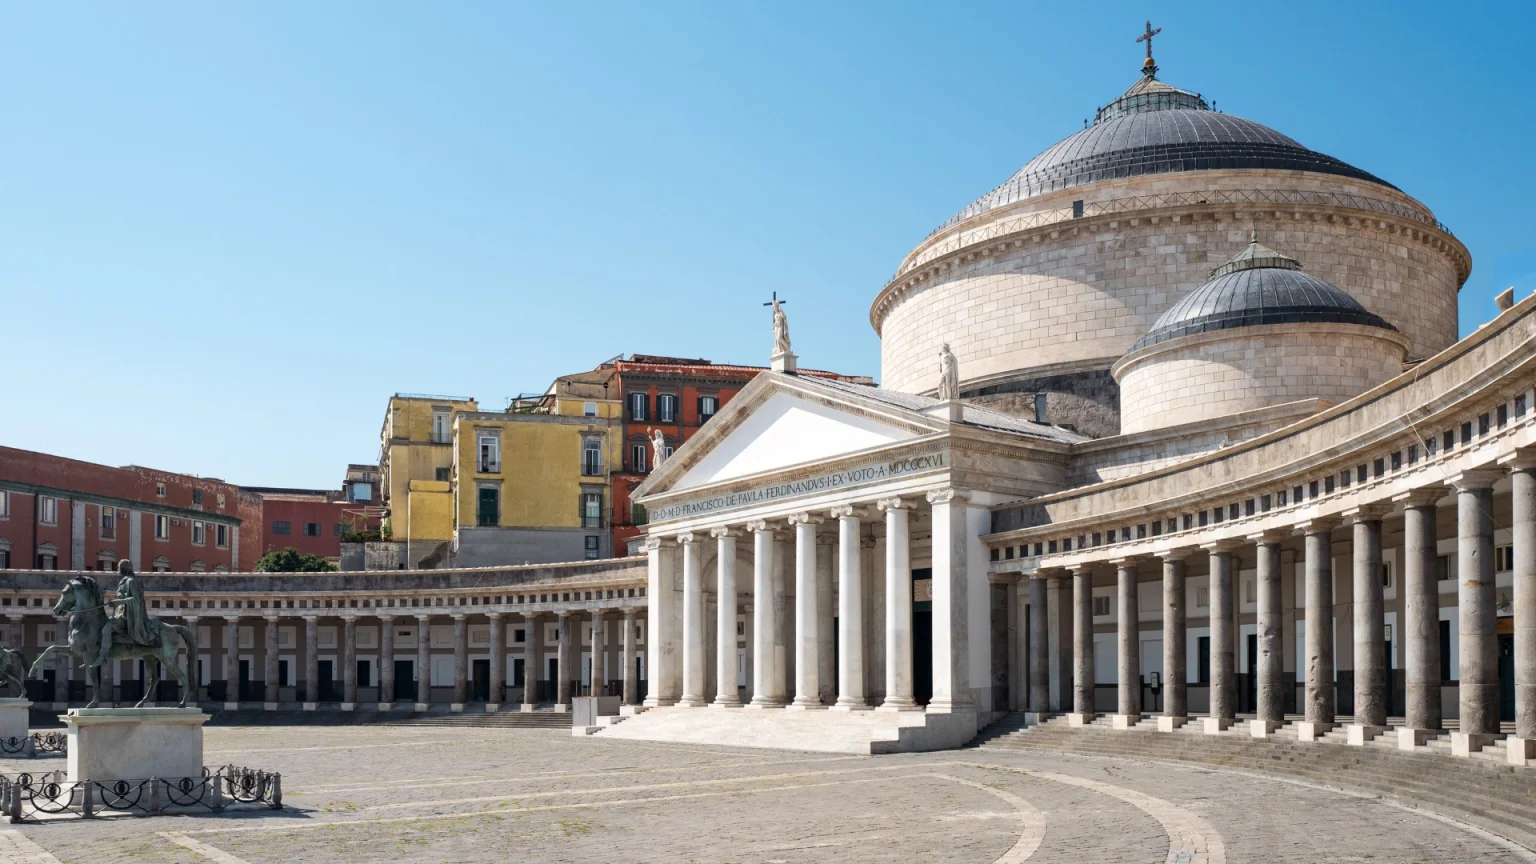 Cosa vedere a Napoli: Piazza del Plebiscito